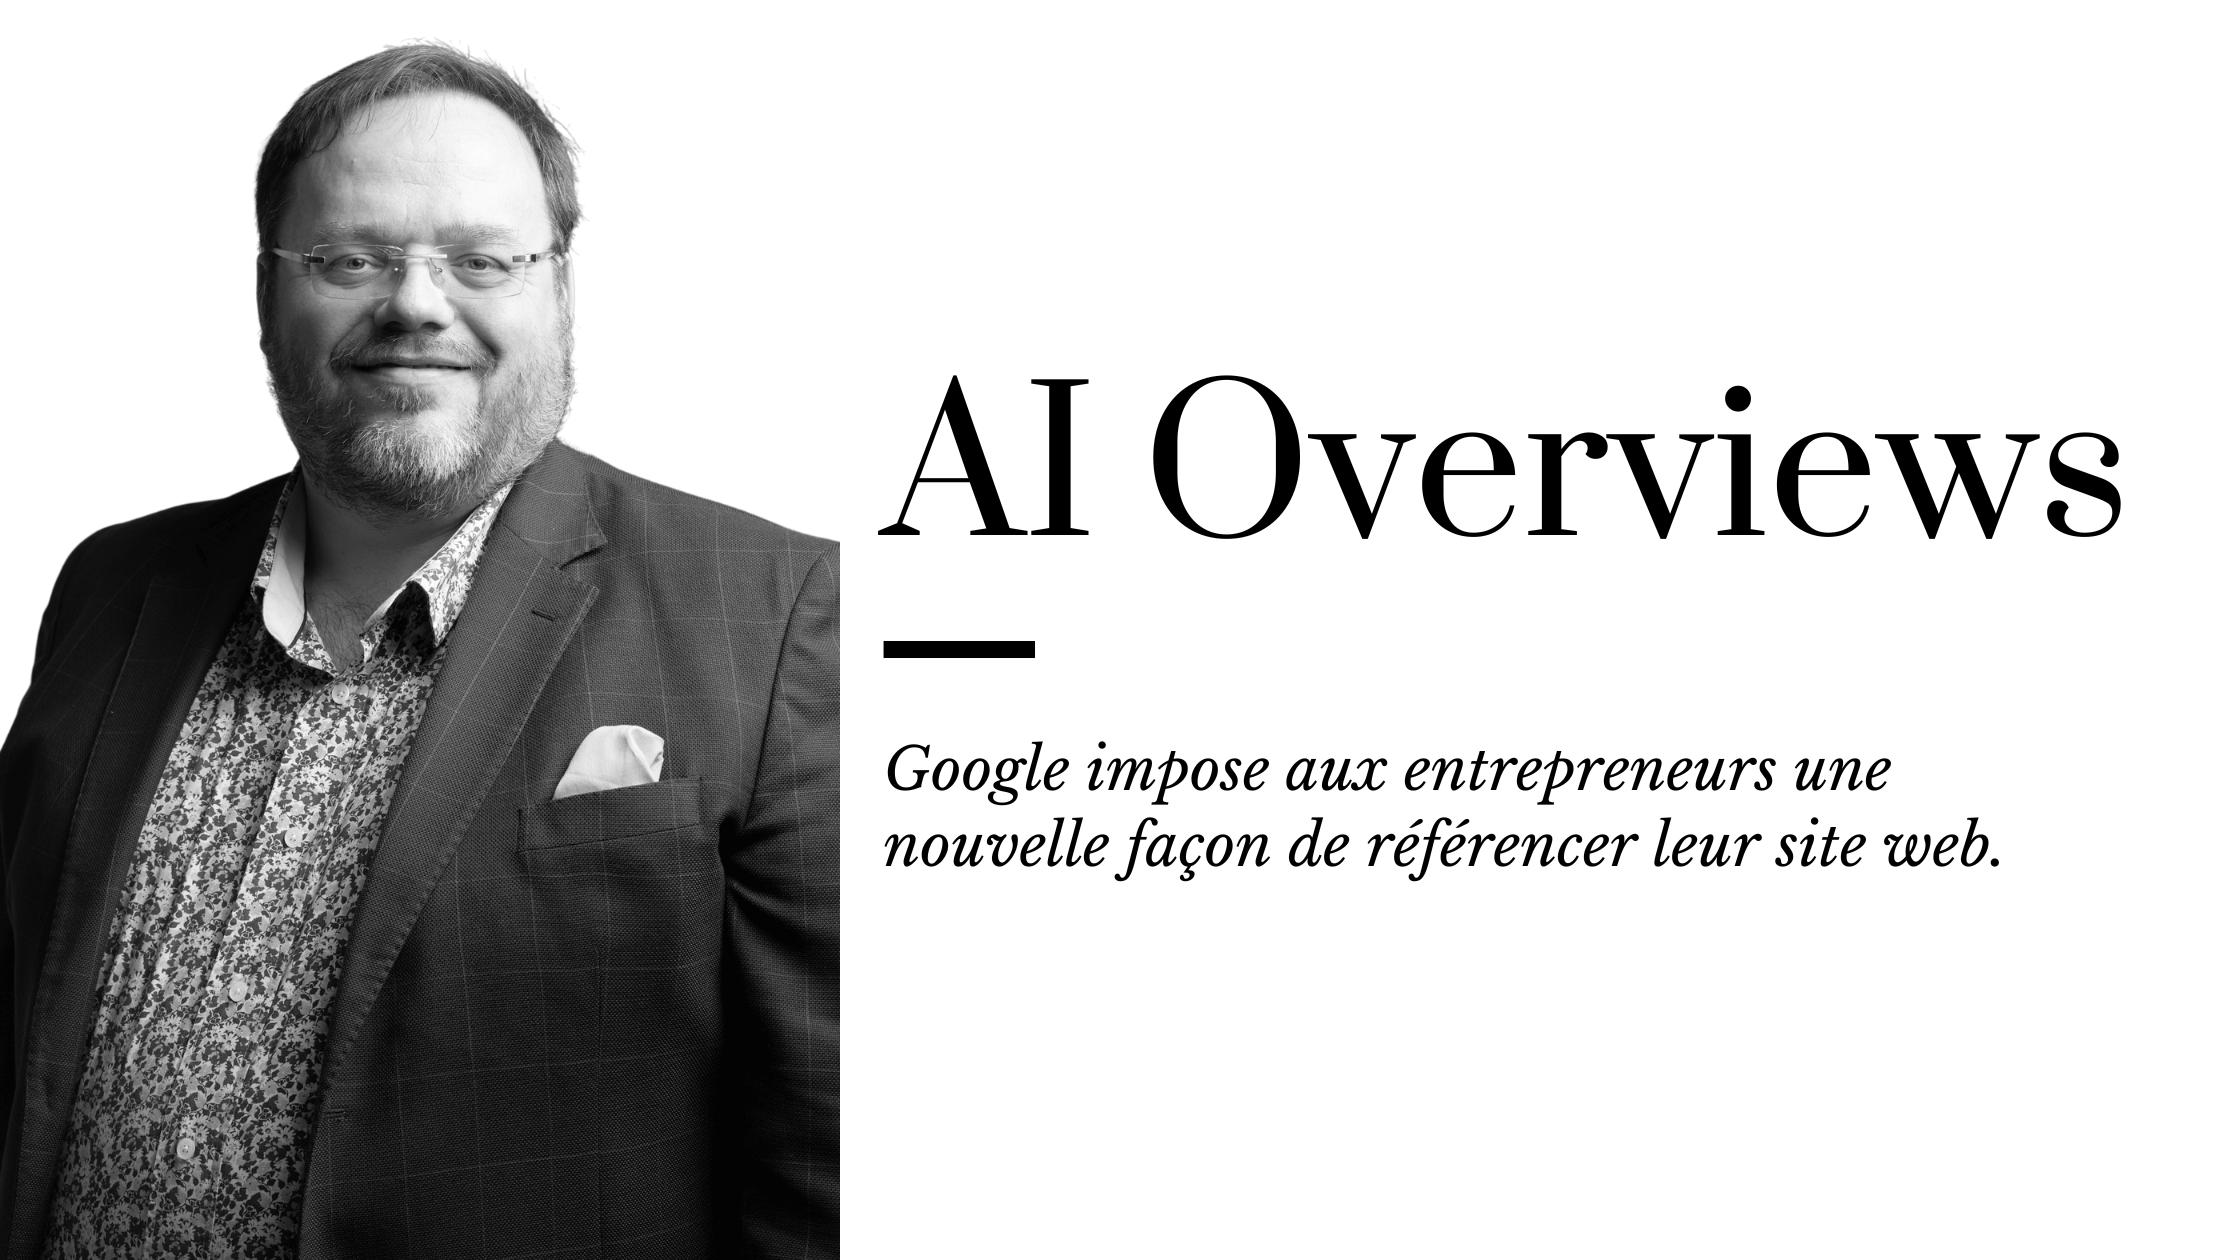 Le guide d’AI Overviews de Google pour les entrepreneurs